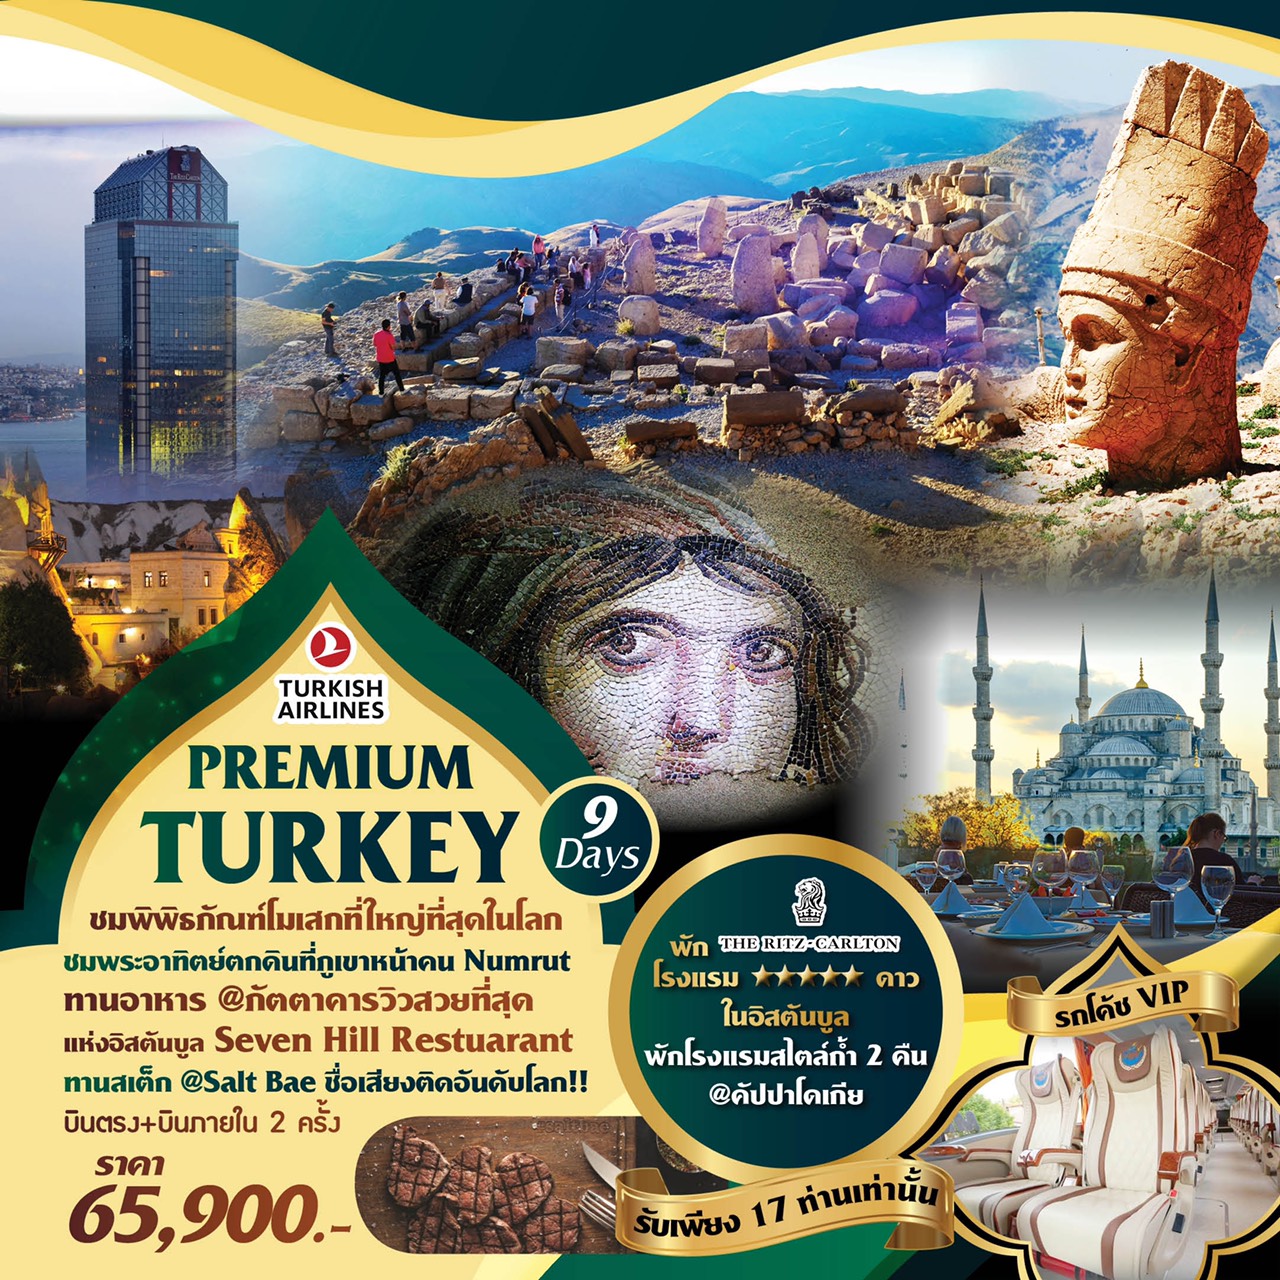 ทัวร์ตุรกี PREMIUM TURKEY 9D 6N (15-23 OCT'19)(TK)